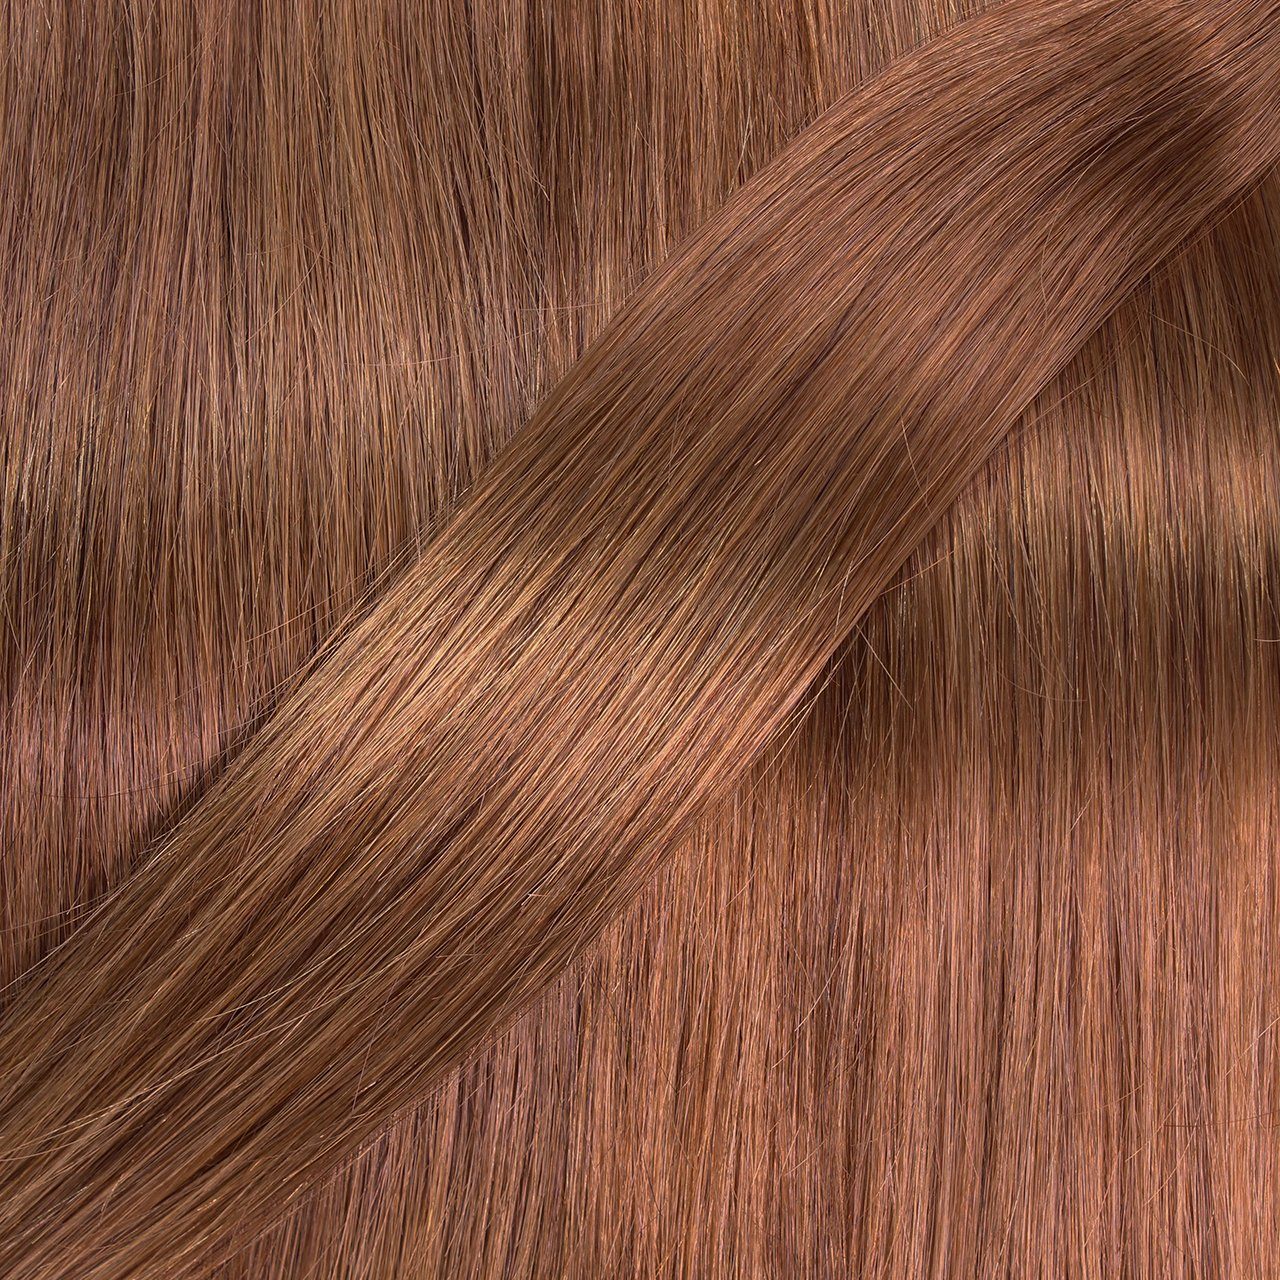 hair2heart Echthaar-Extension Hellblond Natur-Gold #8/03 Clip Seamless Extensions 30cm